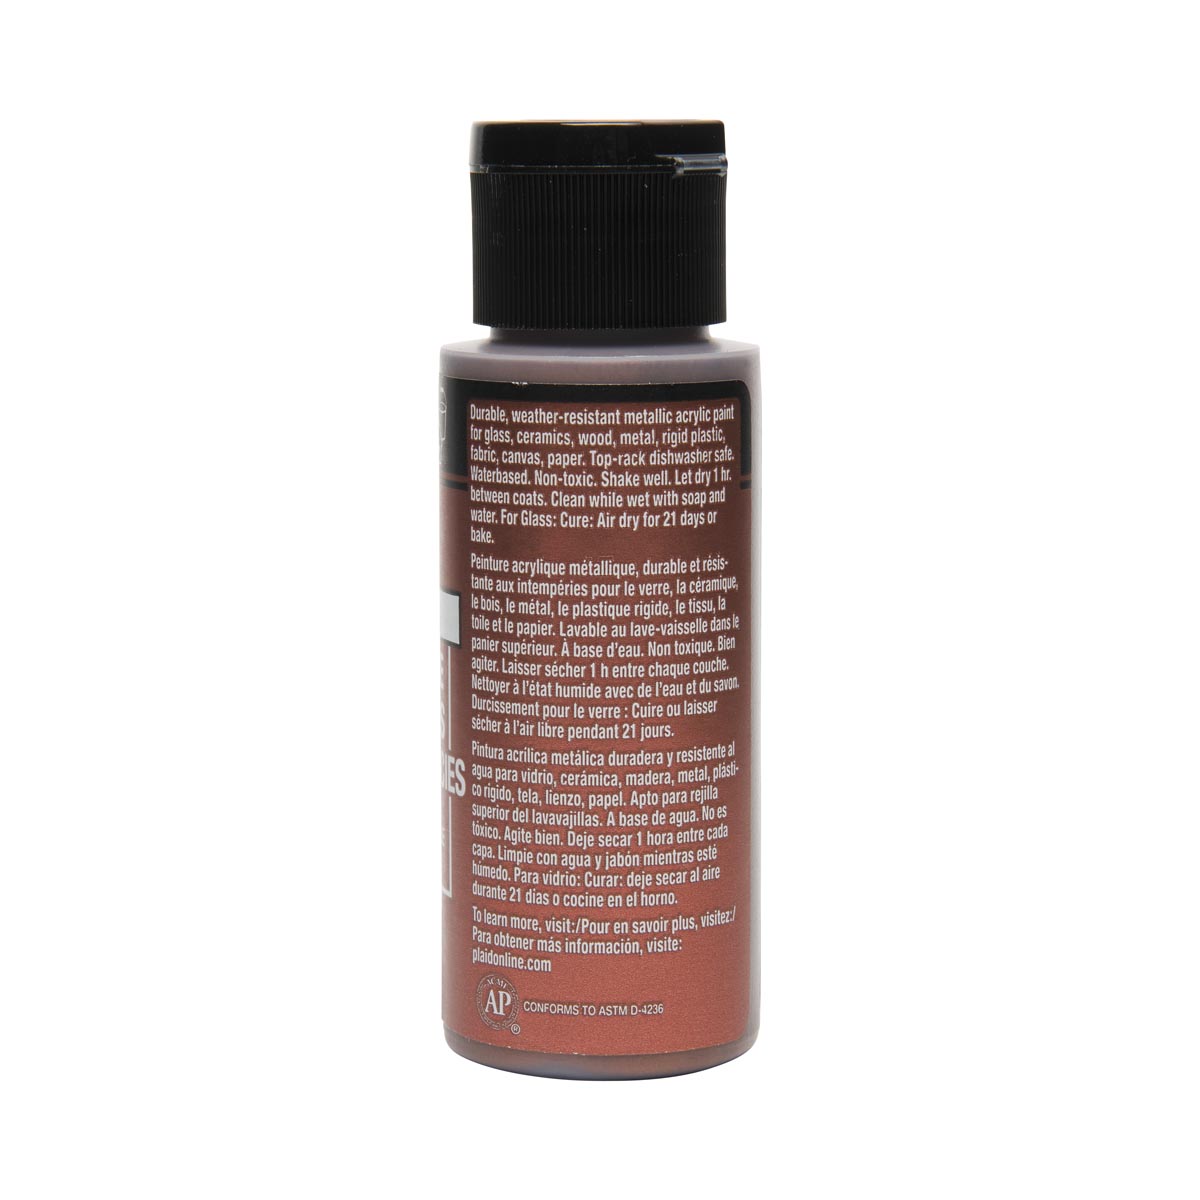 FolkArt ® Multi-Surface Metallic Acrylic Paints - Antique Copper, 2 oz. - 6306